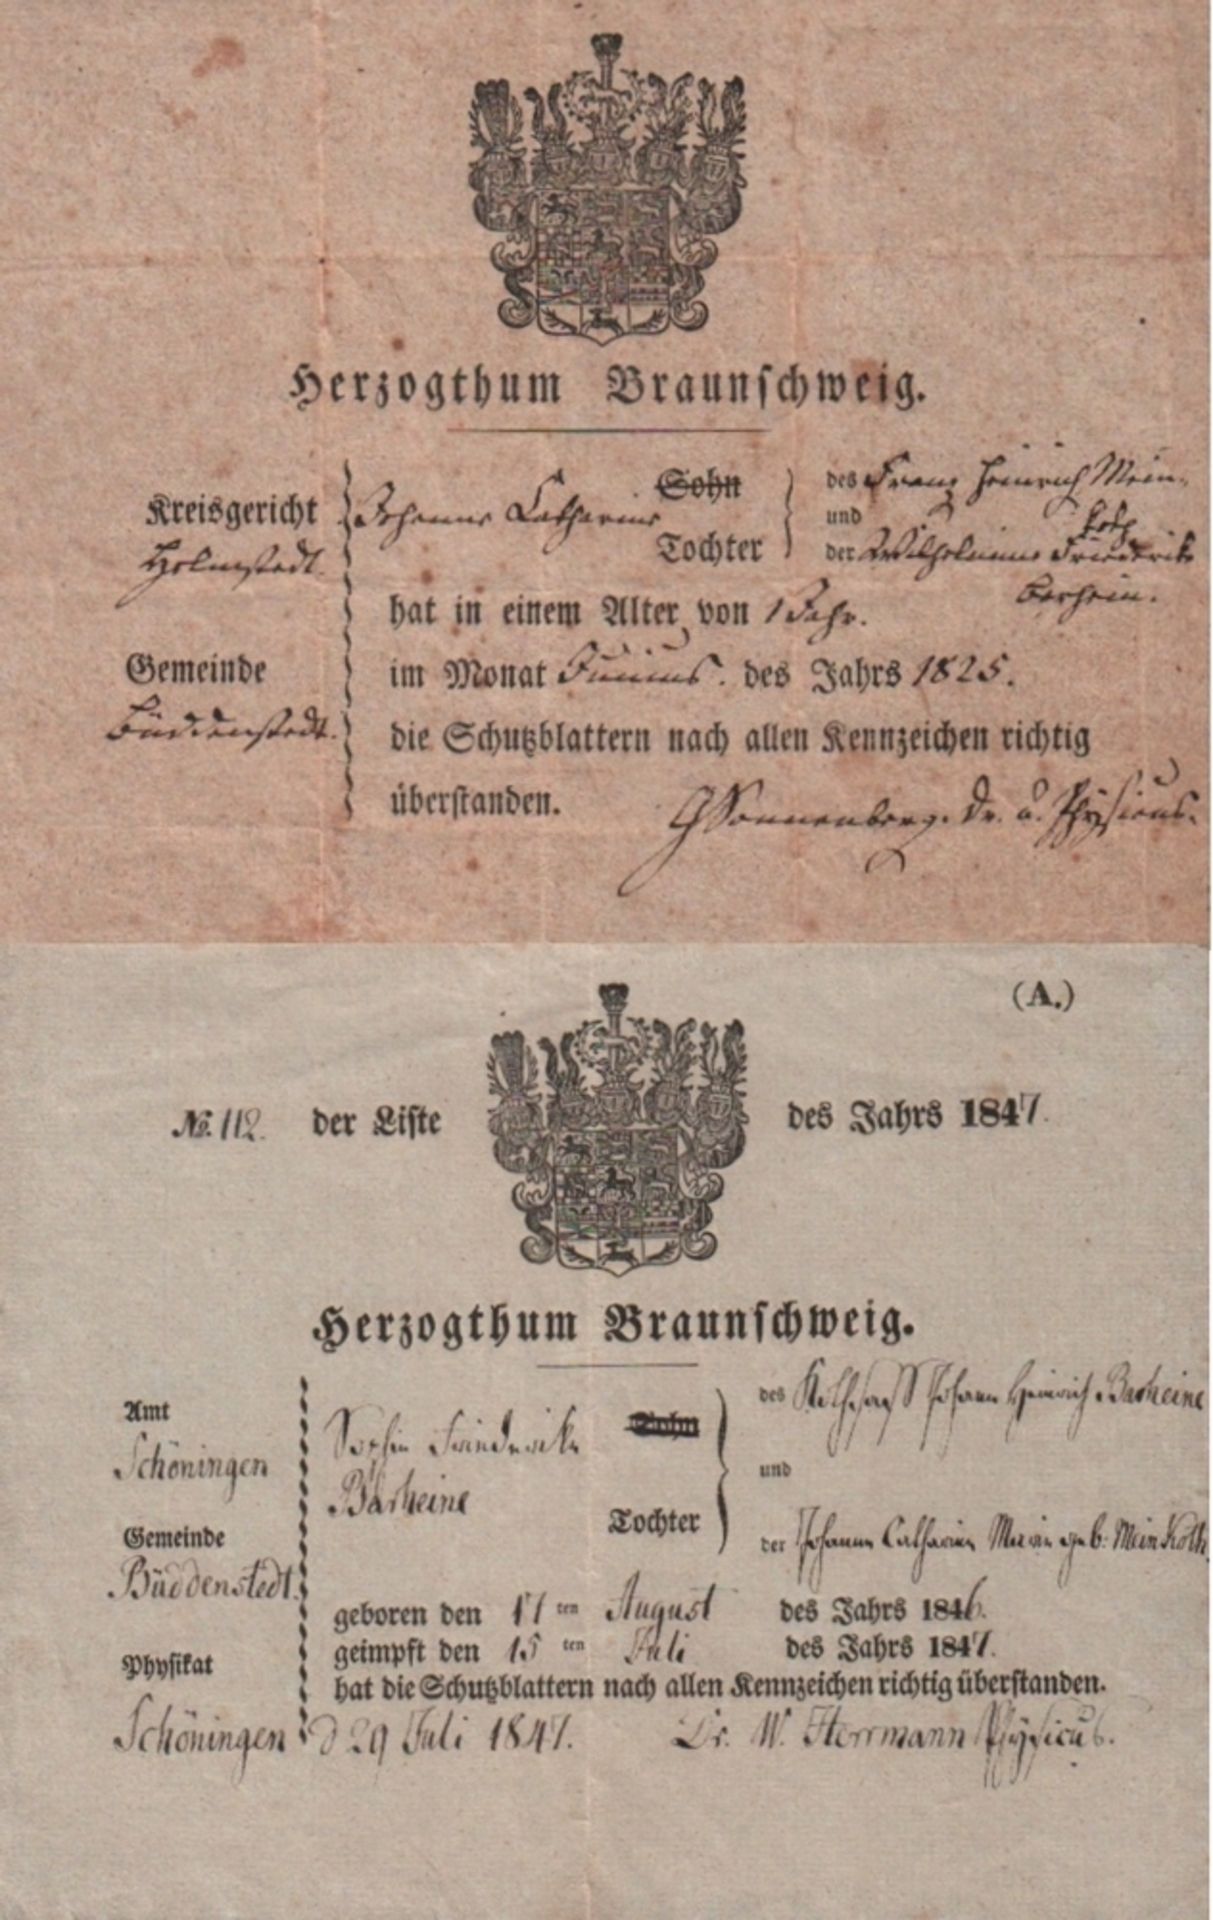 Braunschweig / Büddenstedt. Zwei Impfbescheinigungen. 1825 und 1847, für die Impfung gegen